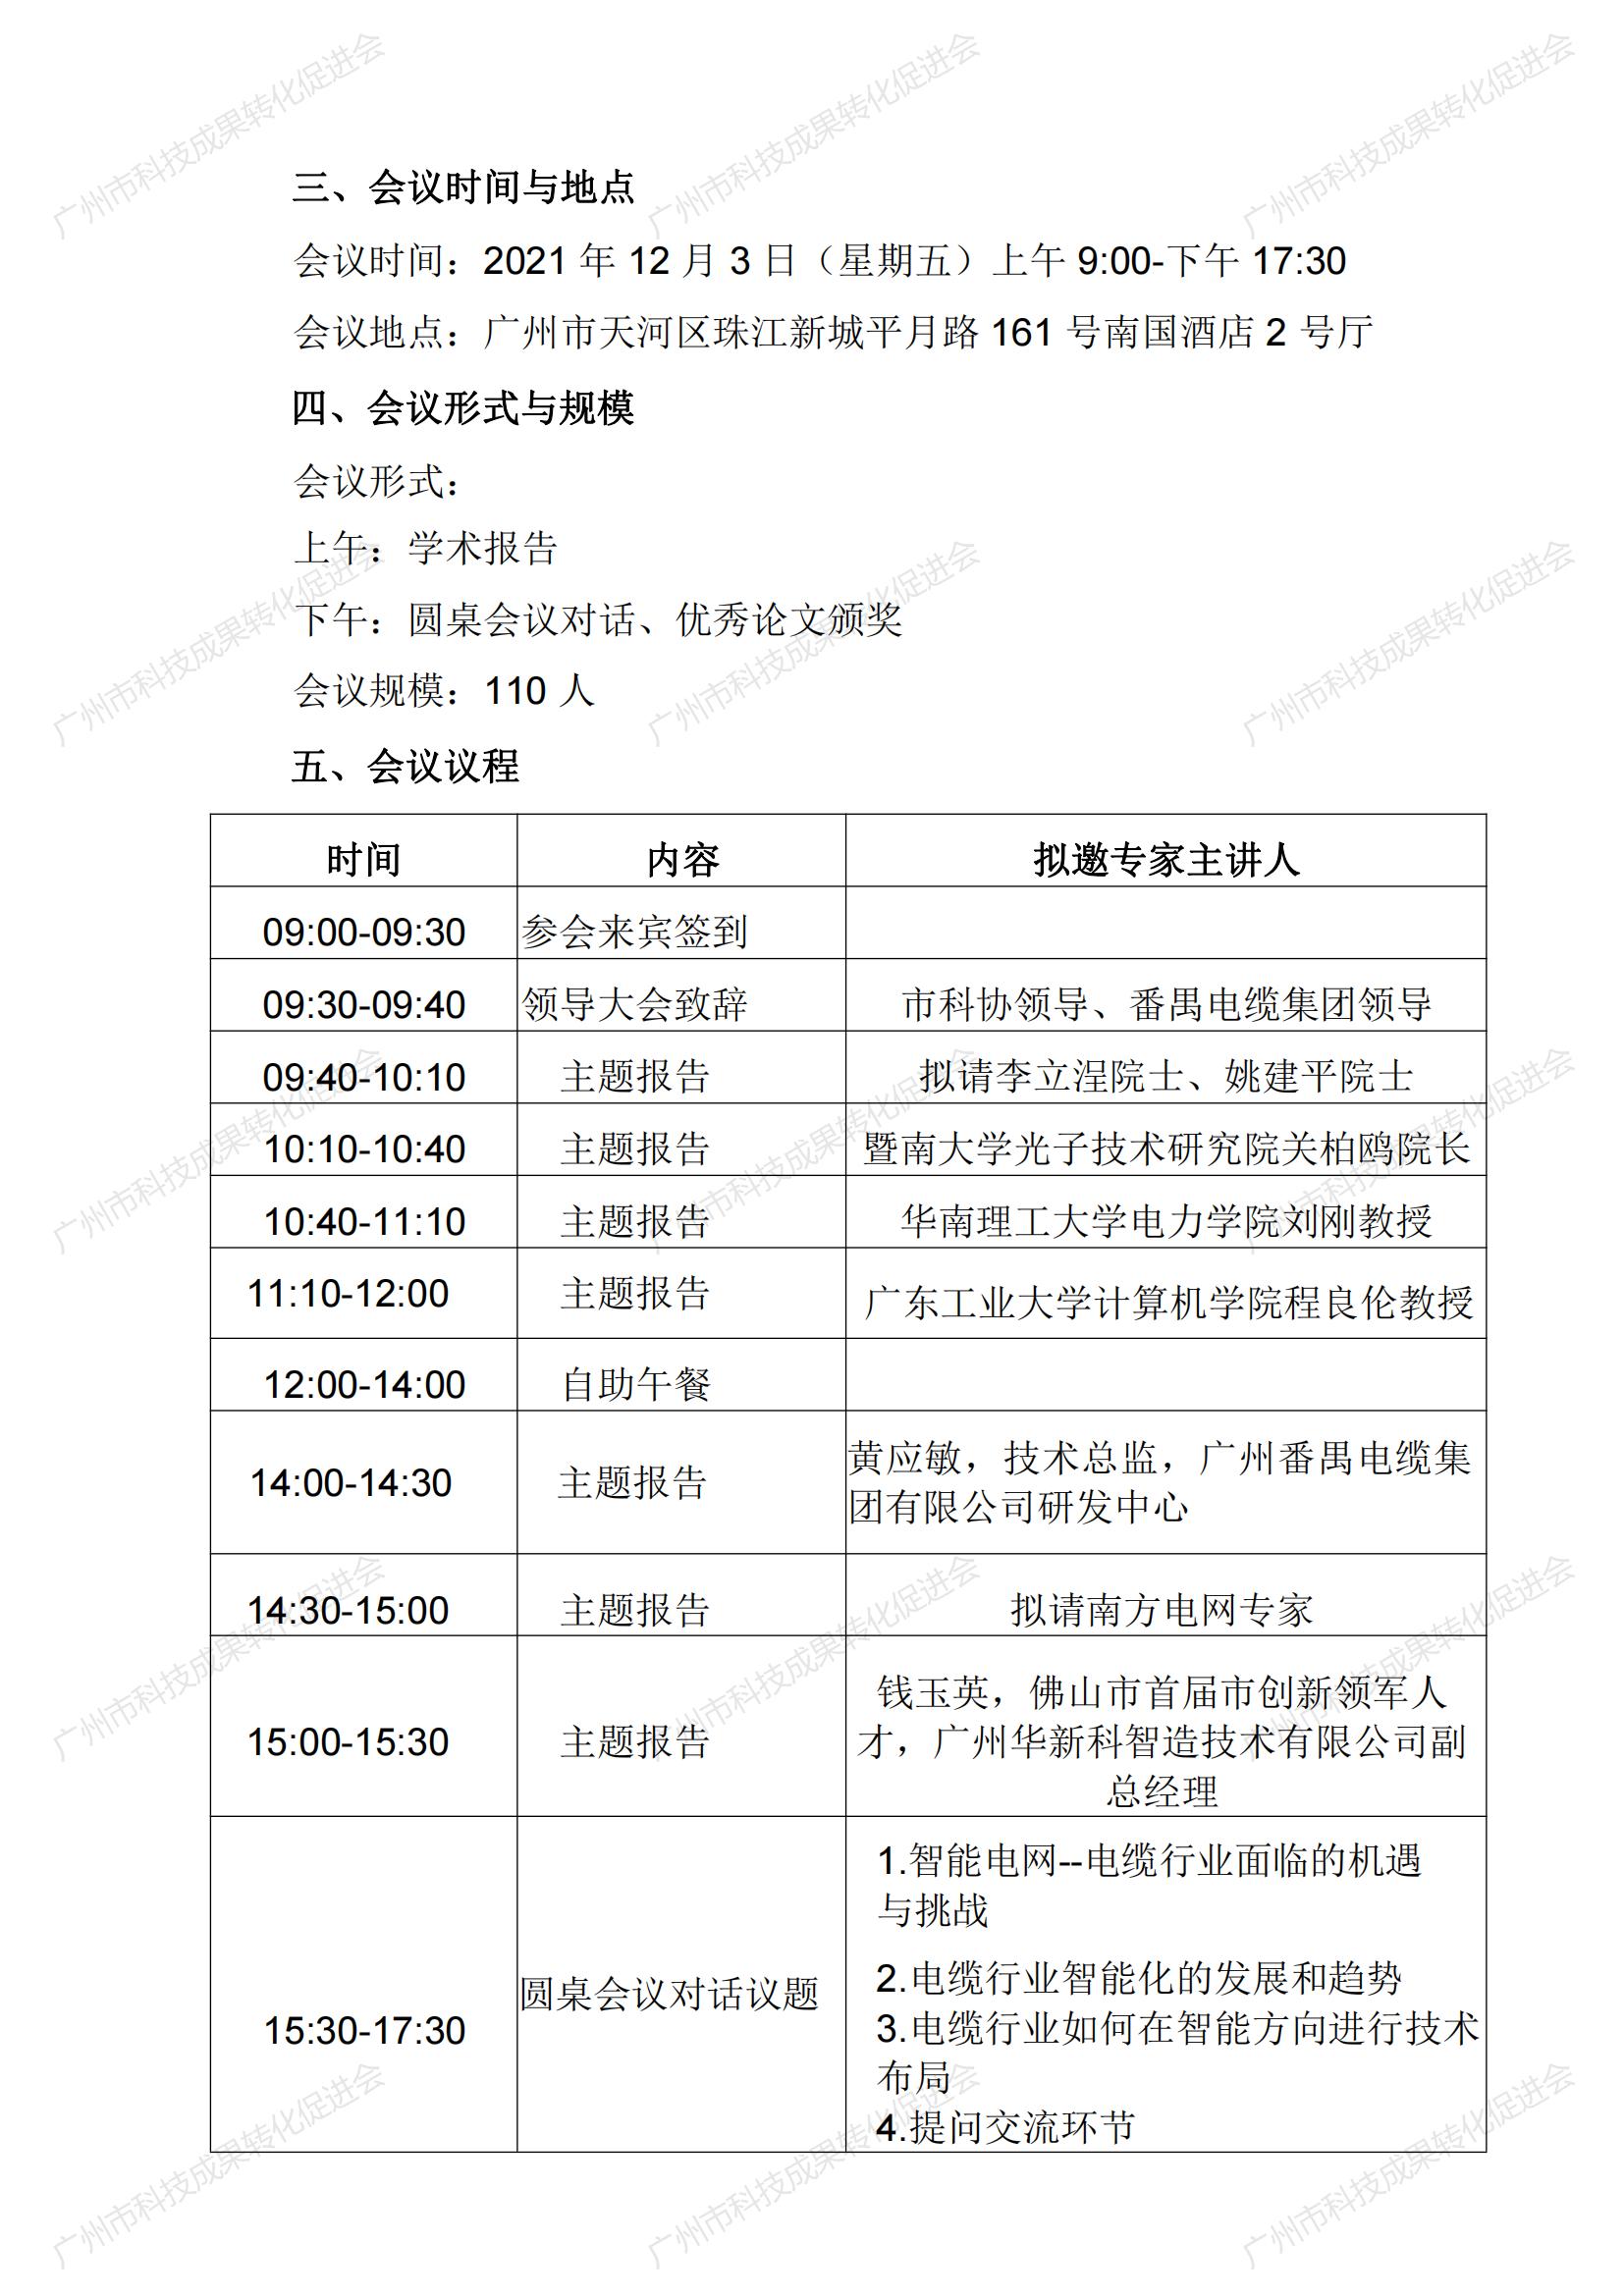 2021年广州市“国际学术会议之都”智能电缆学术会会议通知11.11_02.jpg